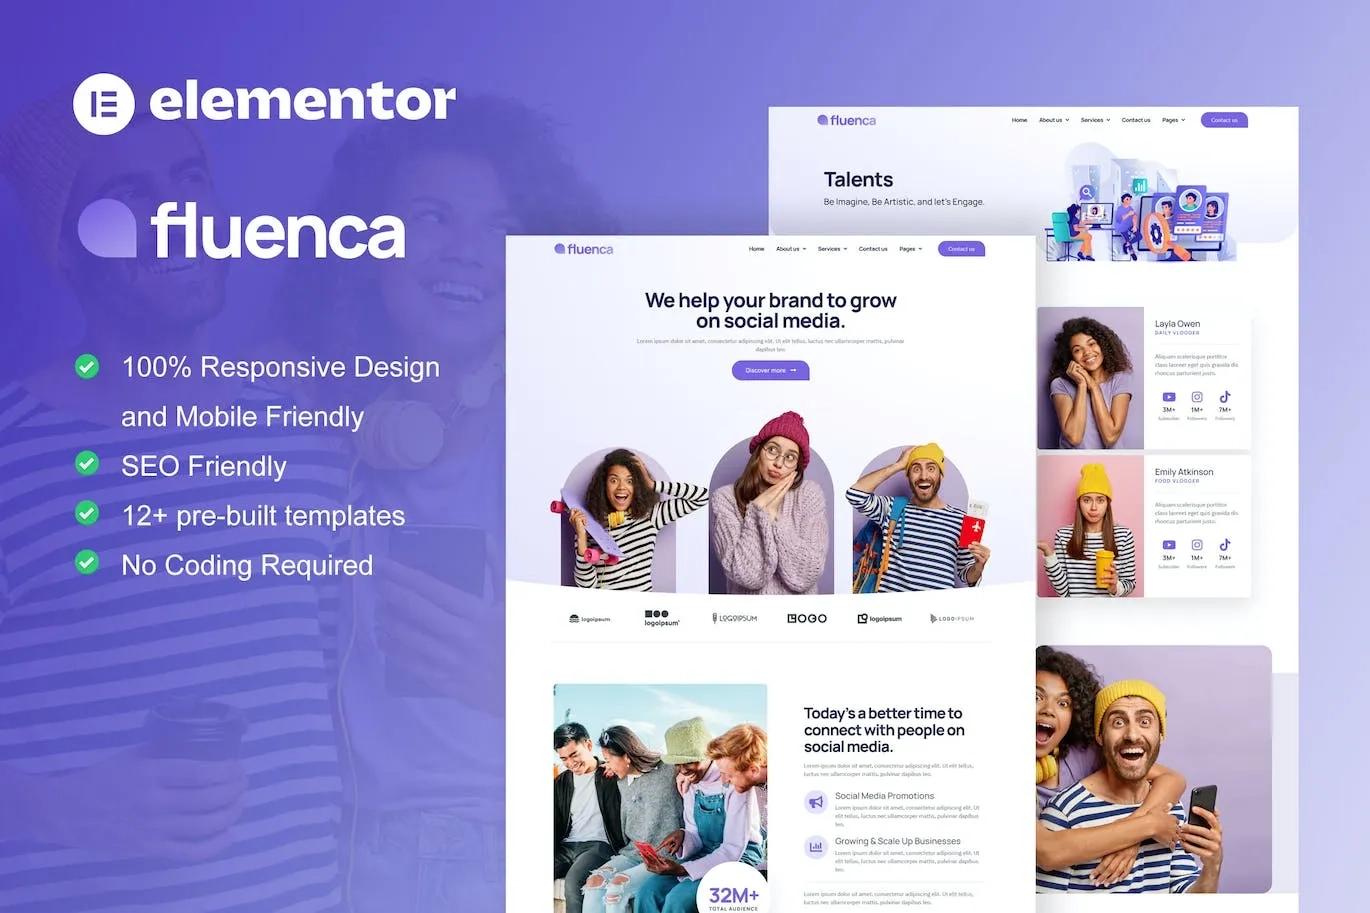 Fluenca Social Media Agency Elementor Pro Full Site Template Kit 2 1697452721 1